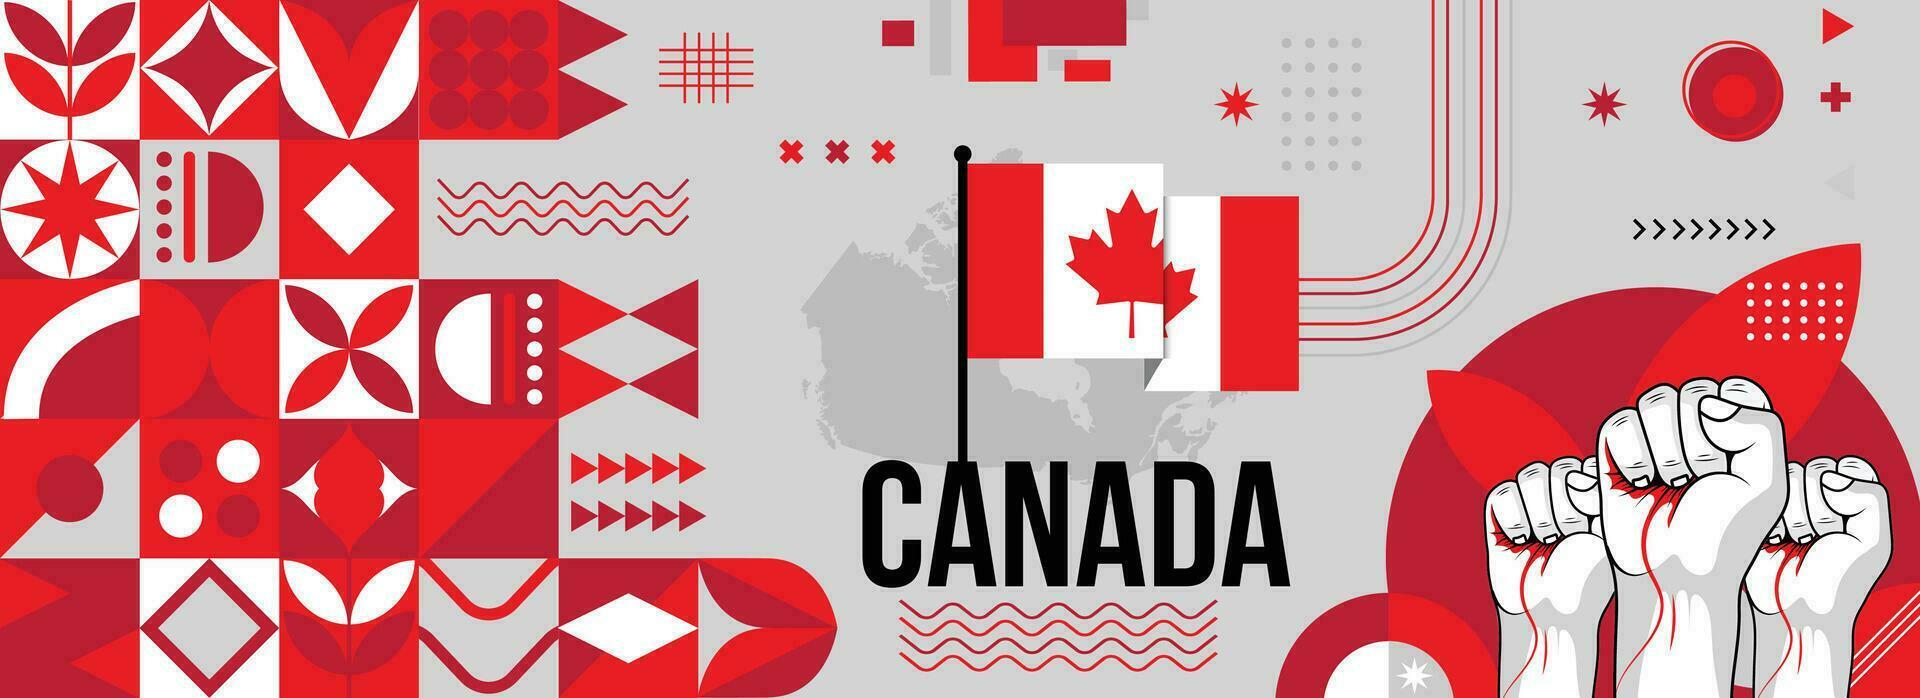 Canada nationaal of onafhankelijkheid dag banier voor land viering. vlag en kaart van Canadezen met verheven vuisten. modern retro ontwerp met typorgaphy abstract meetkundig pictogrammen. vector illustratie